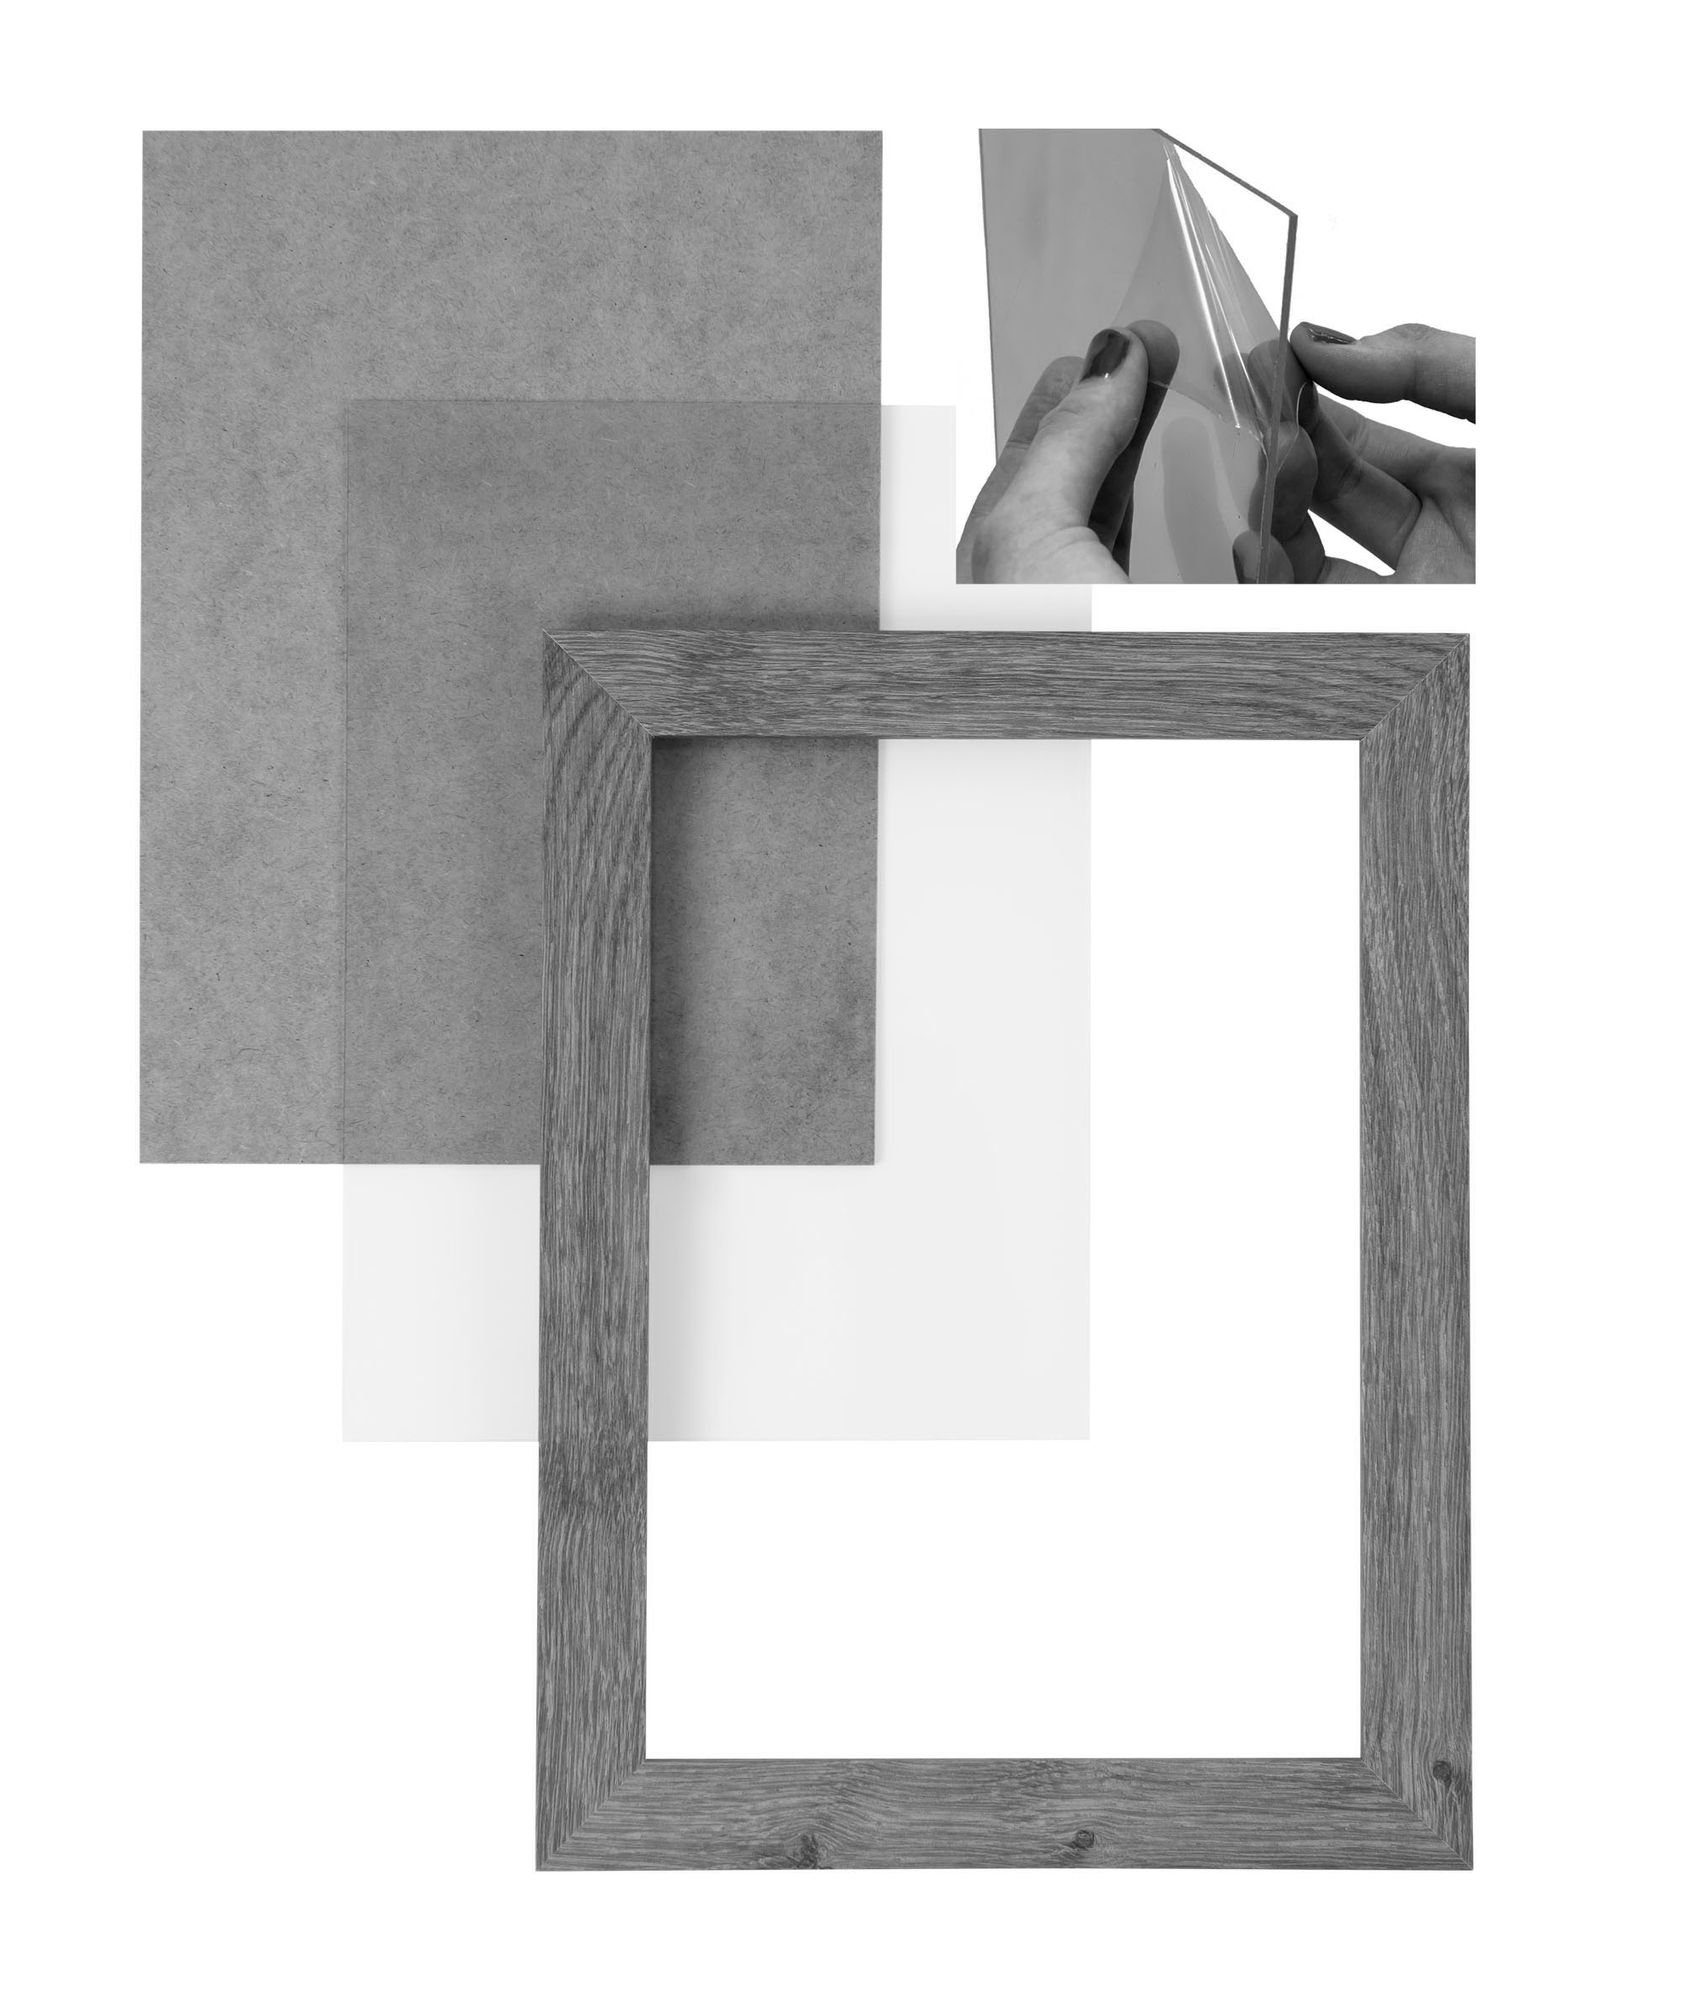 Rückwand Clamaro Bilderrahmen Aufhänger MDF Rahmen in 'Collage' eiche 90x130 Holz handgefertigt Maß Moderner eckiger nach FSC® CLAMARO und Acrylglas, sonama Bilderrahmen inkl.